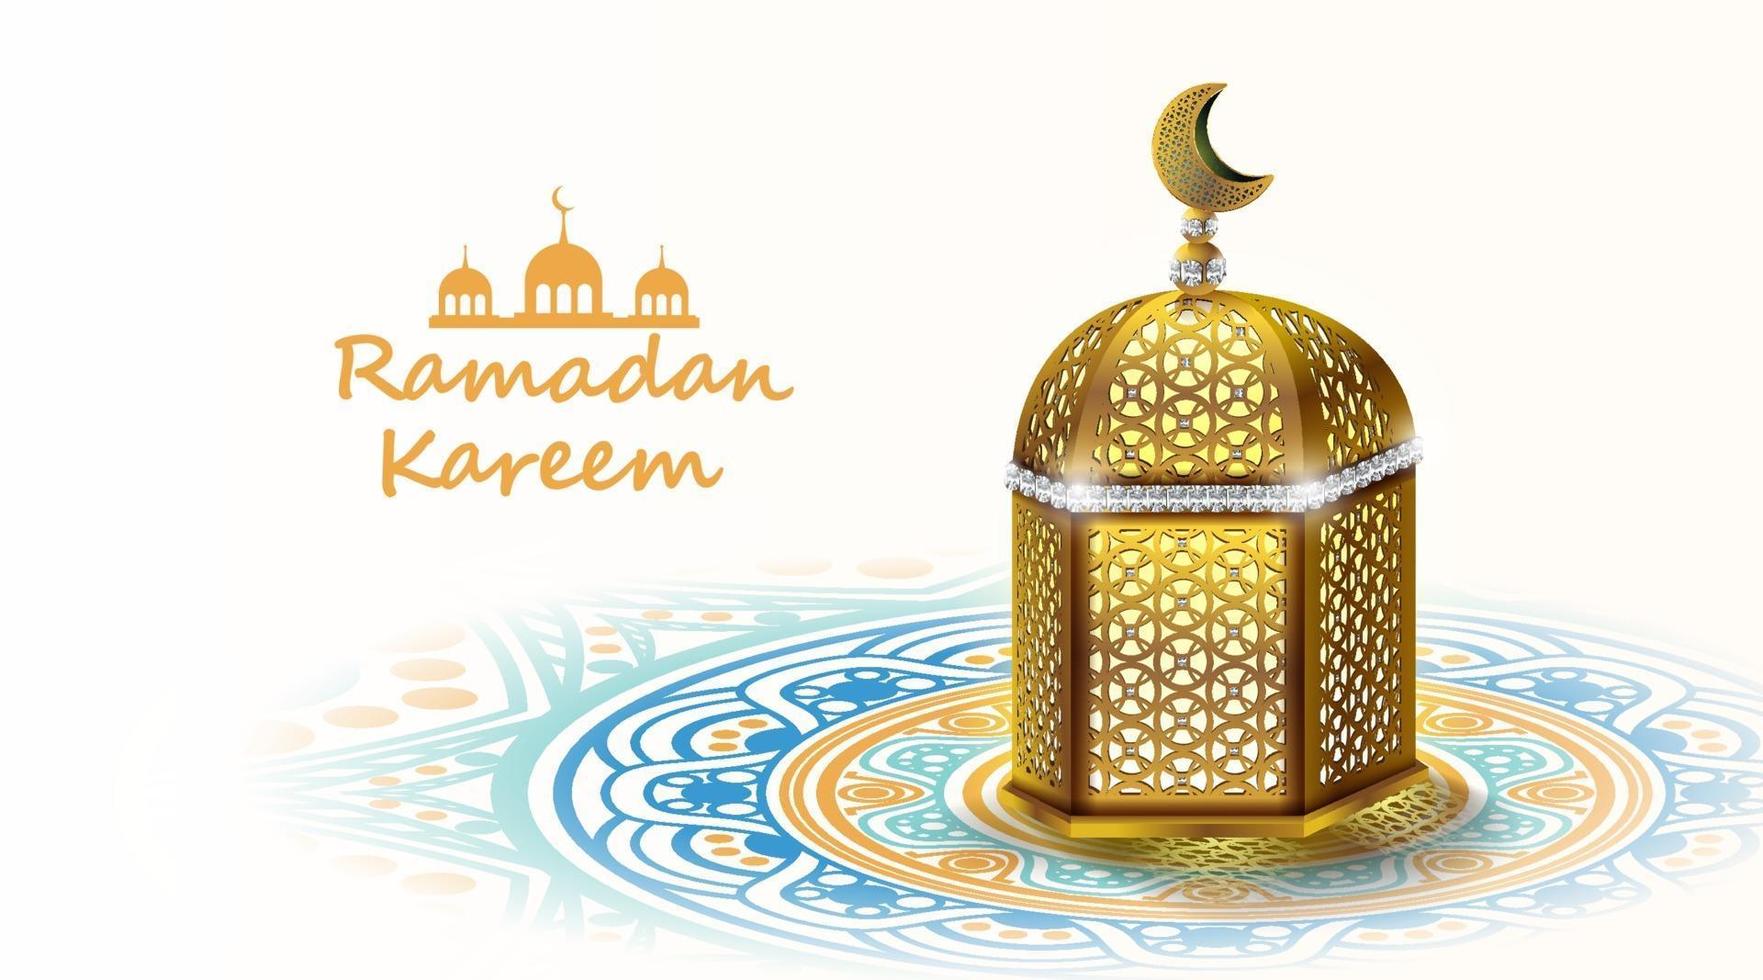 ramadan kareem-ontwerp met gouden Arabische lamp. vector illustratie.